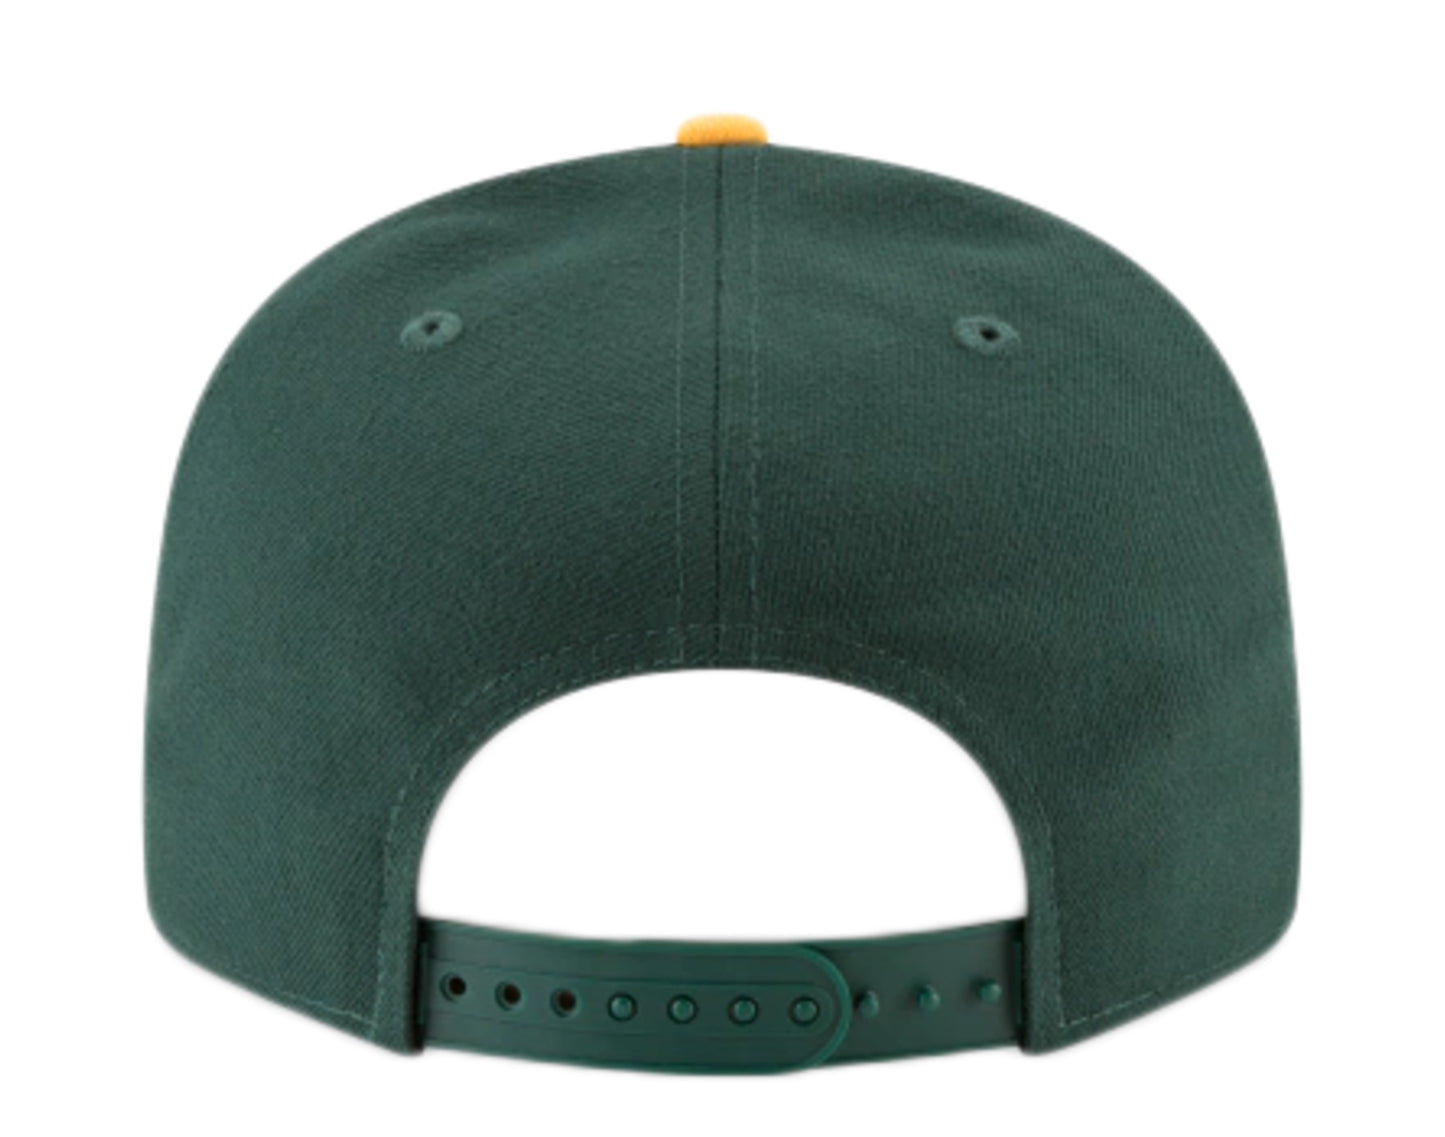 New Era 9Fifty MLB Oakland Athletics Basic Snapback Hat